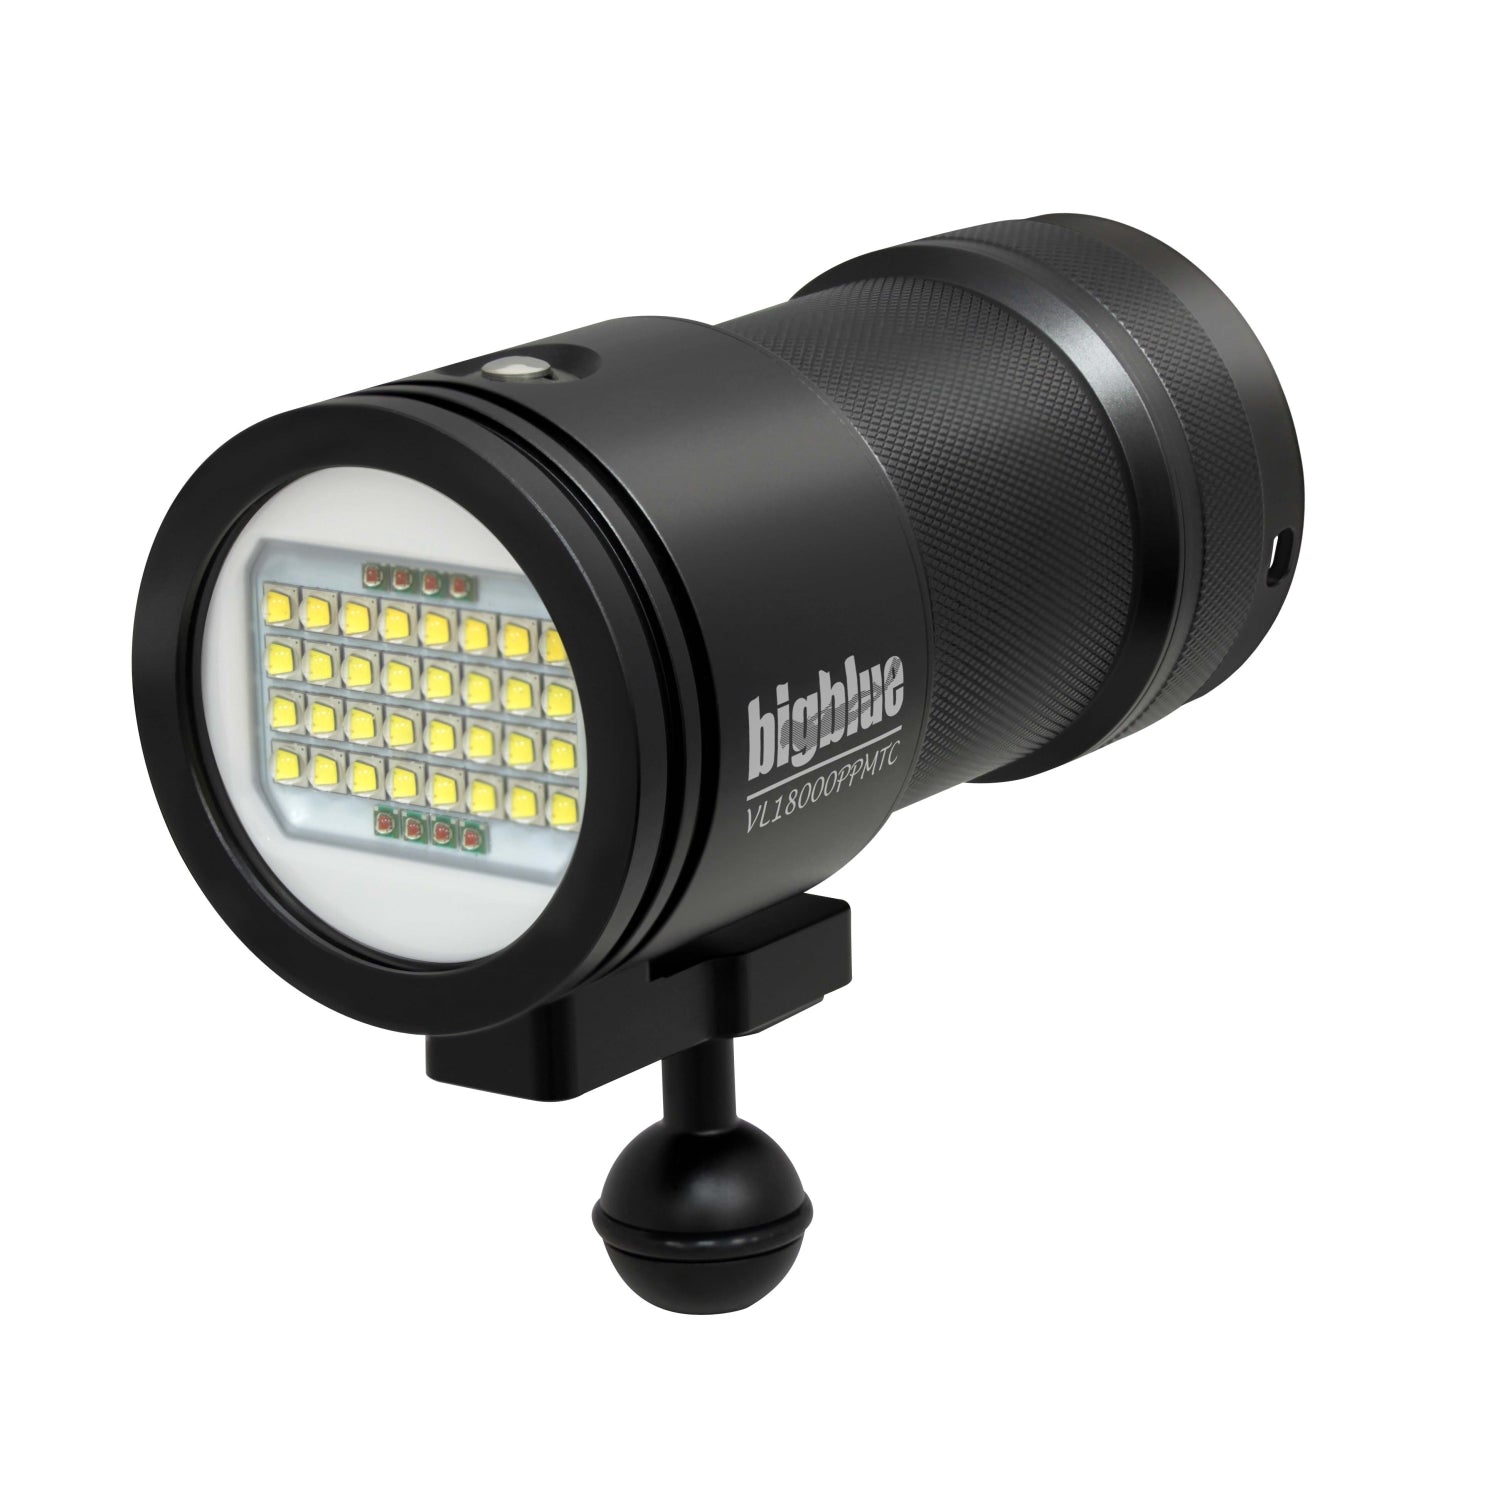 Bigblue VL18000P-Pro-MINI-TC 18000-Lumen Video Light